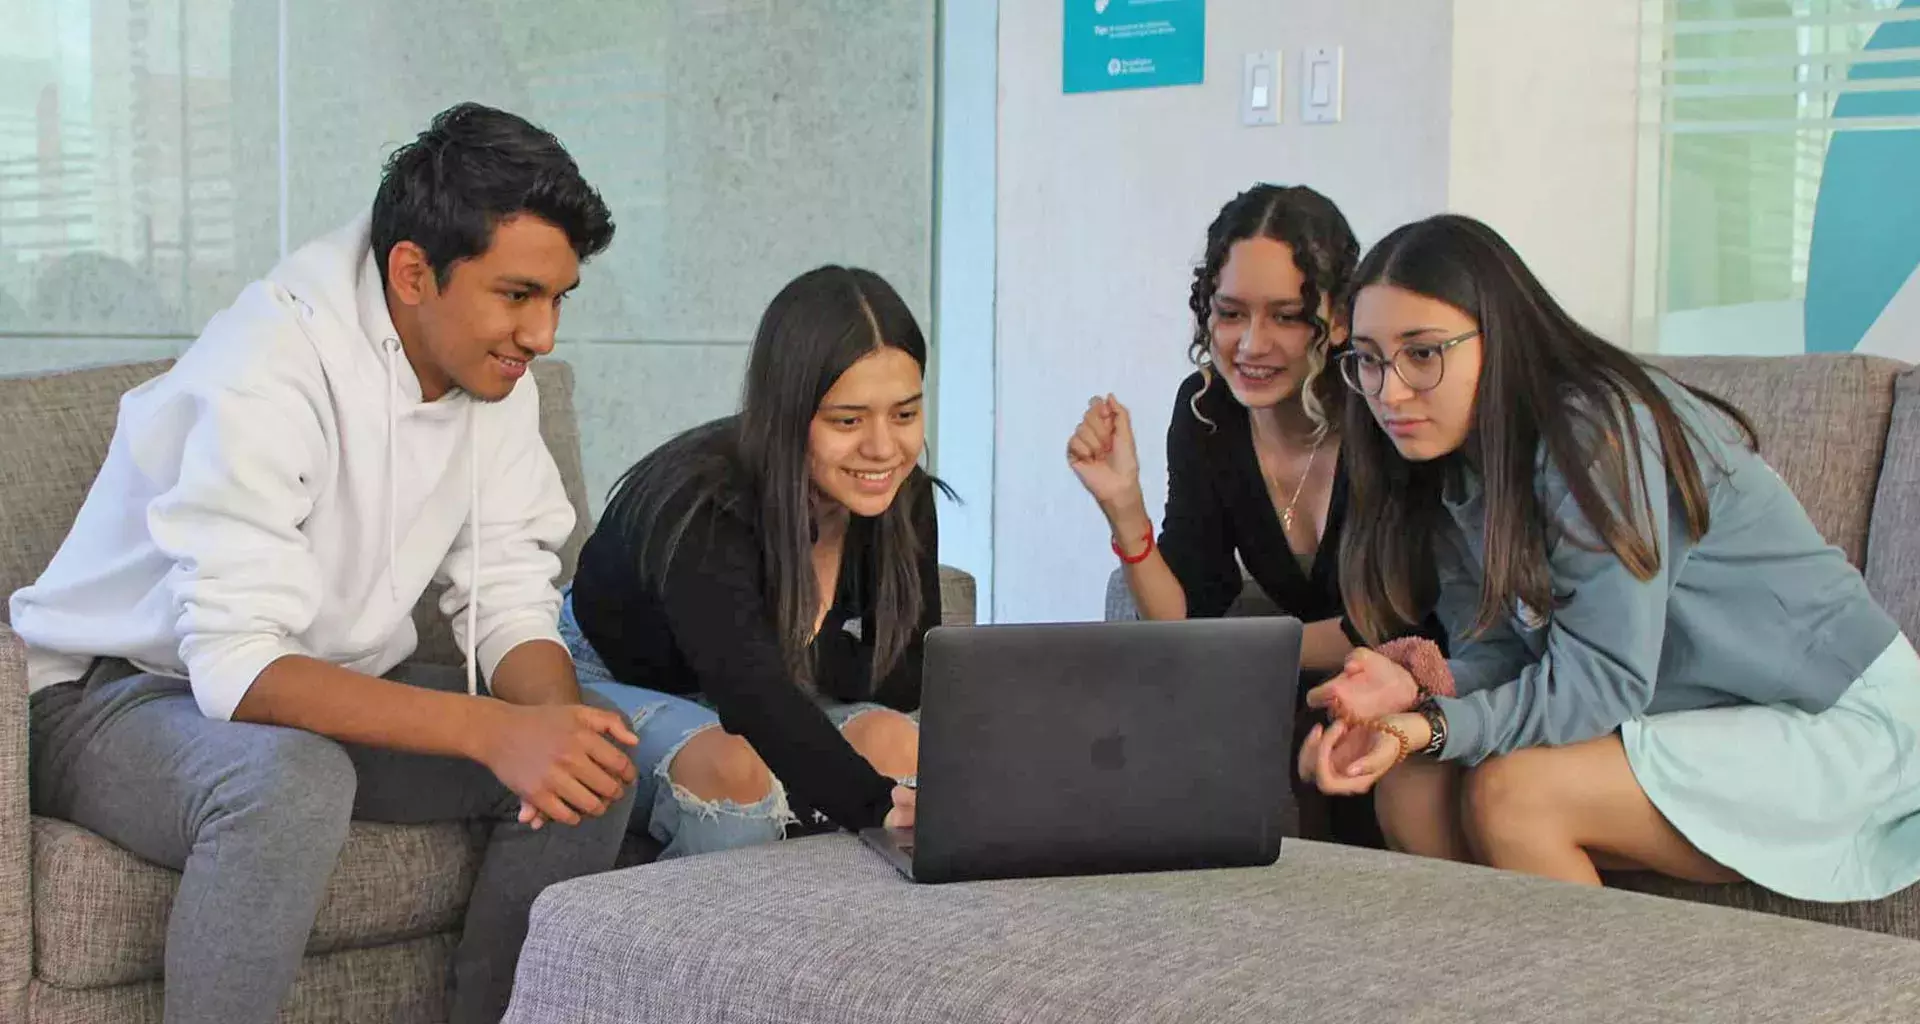 Estudiantes de la PrepaTec representarán al campus Cuernavaca en el Encuentro Nacional de Líderes con Sentido Humano del Tecnológico de Monterrey con el proyecto social "TÚ LUGAR".